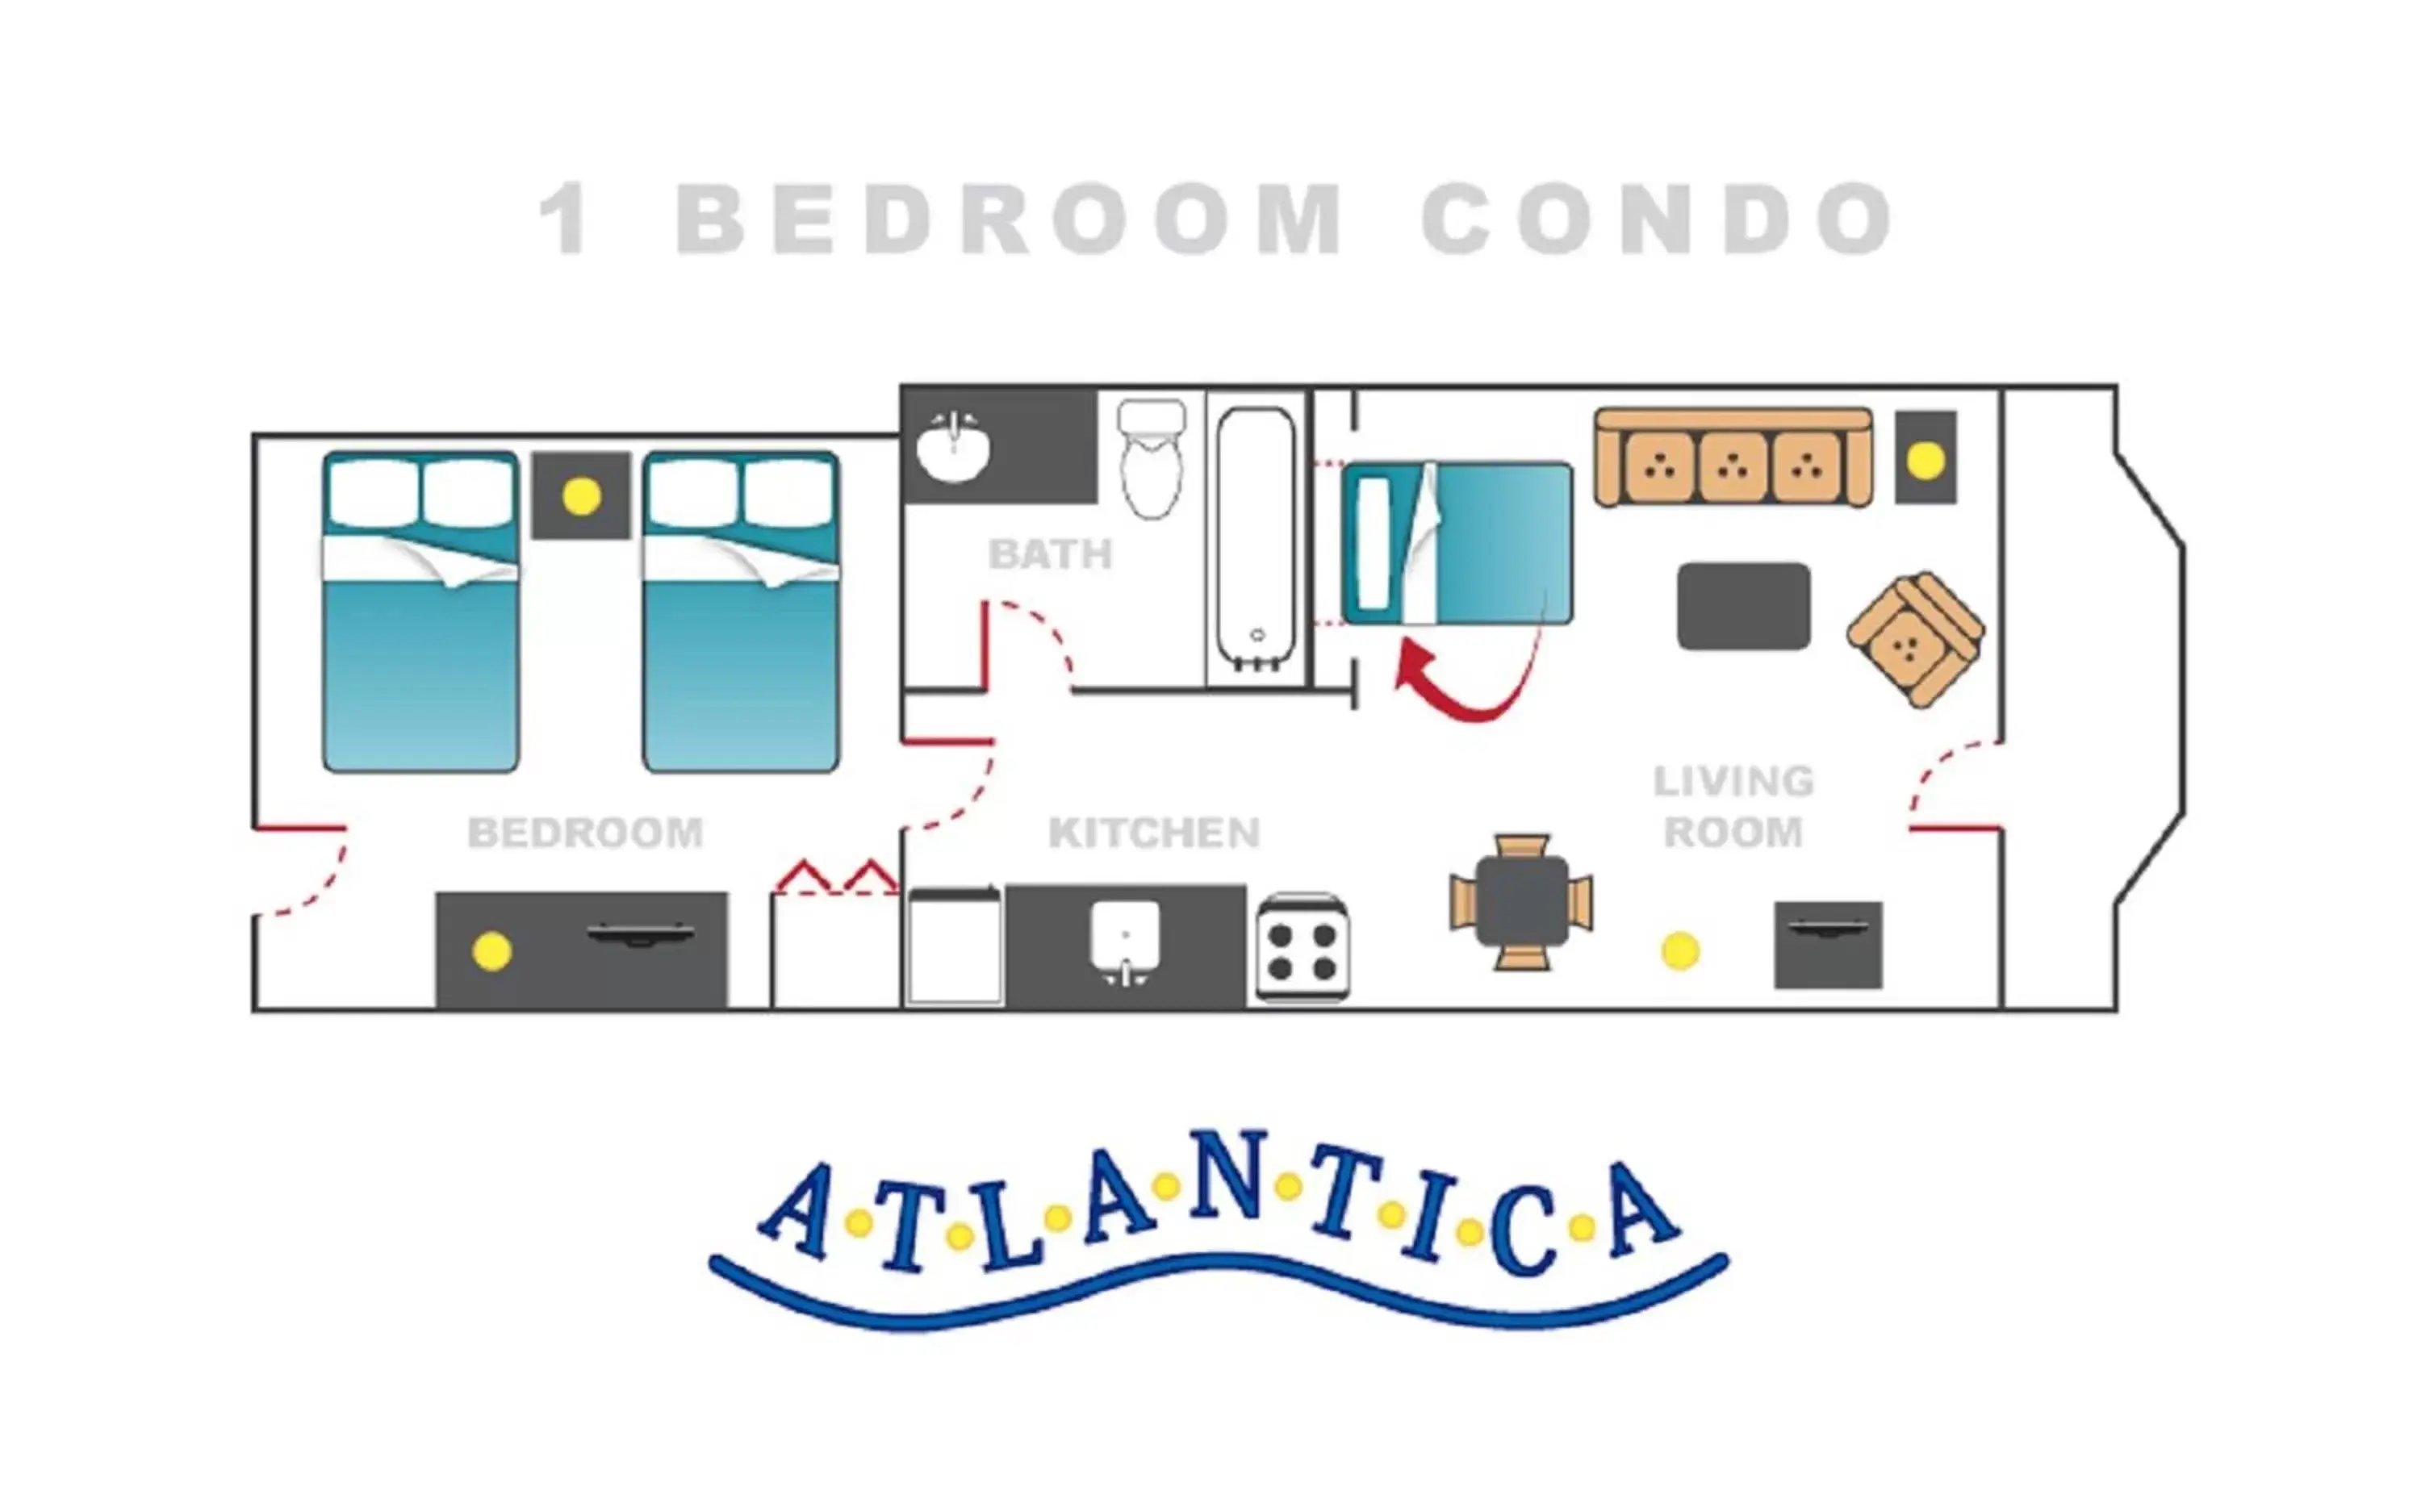 Floor Plan in Atlantica Resort